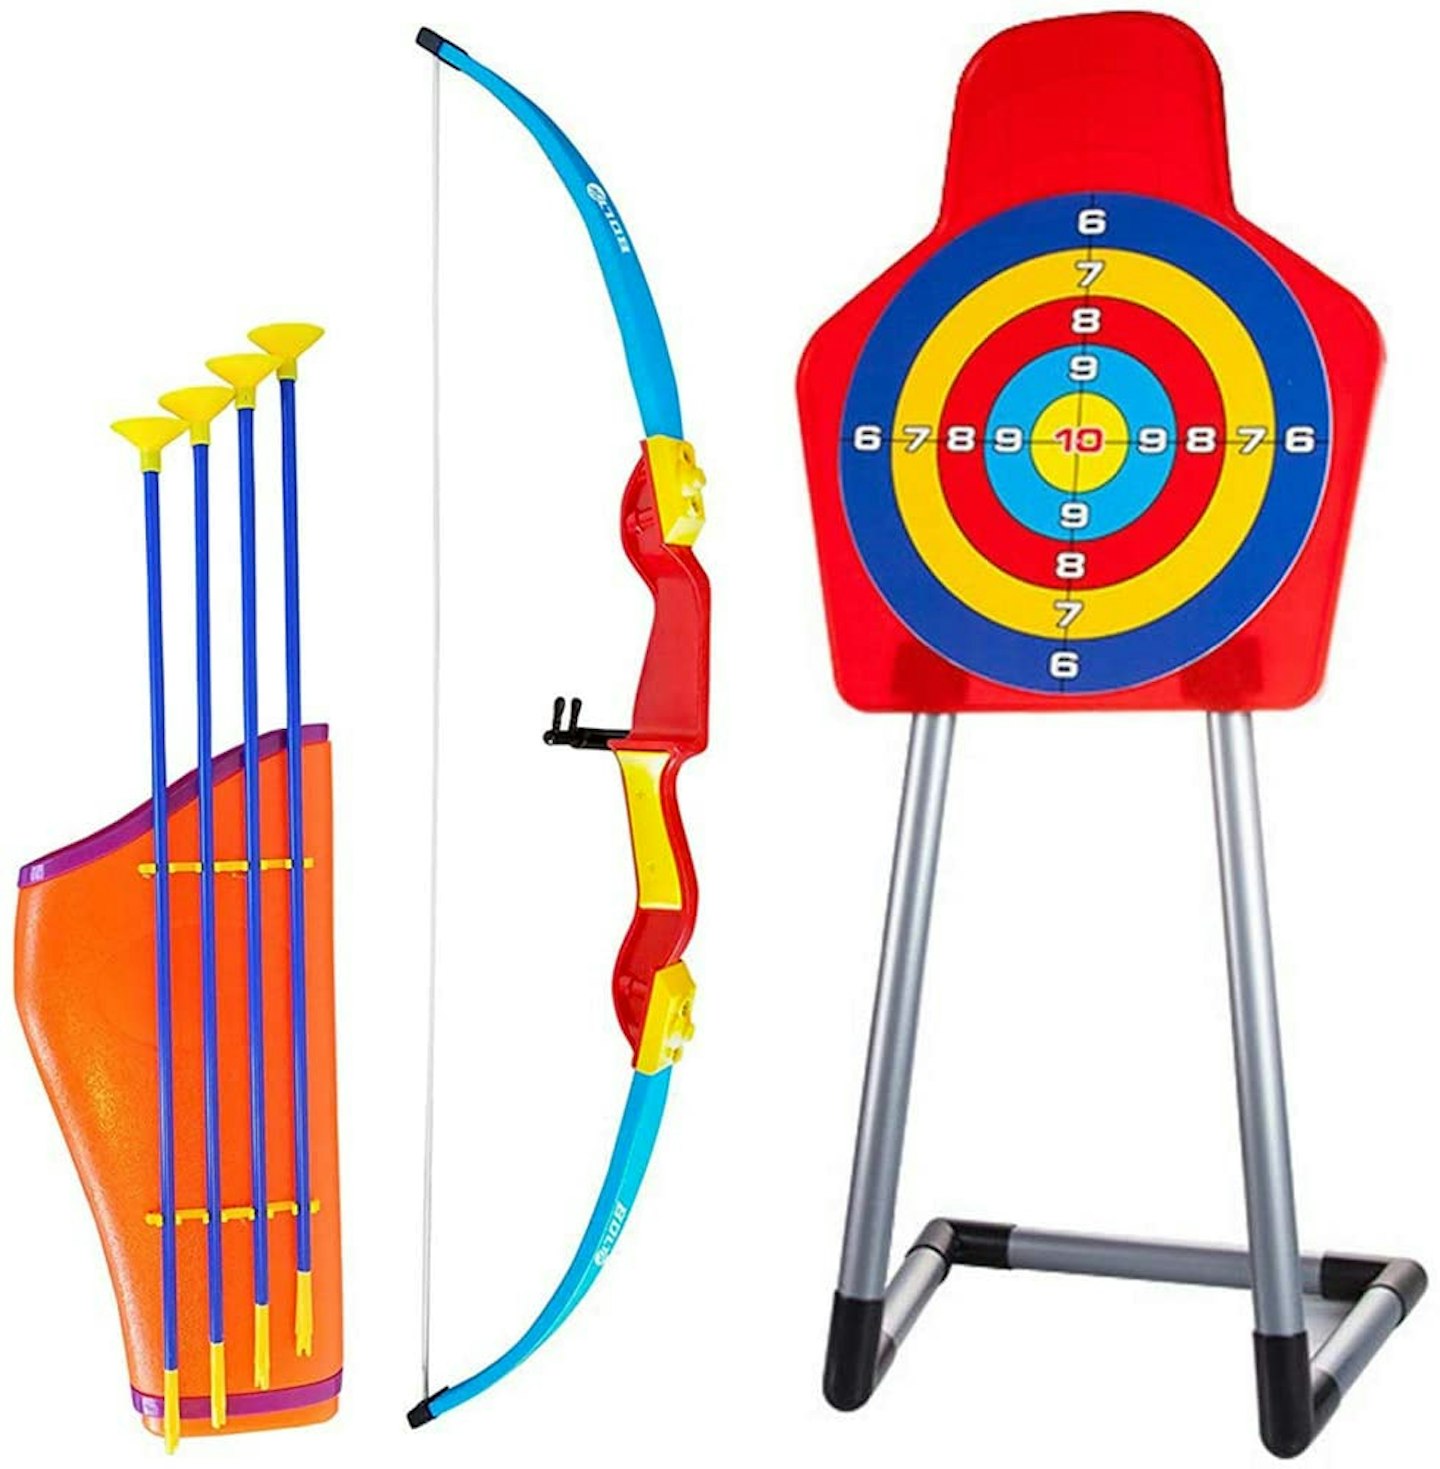 Kings Sport Archery Set